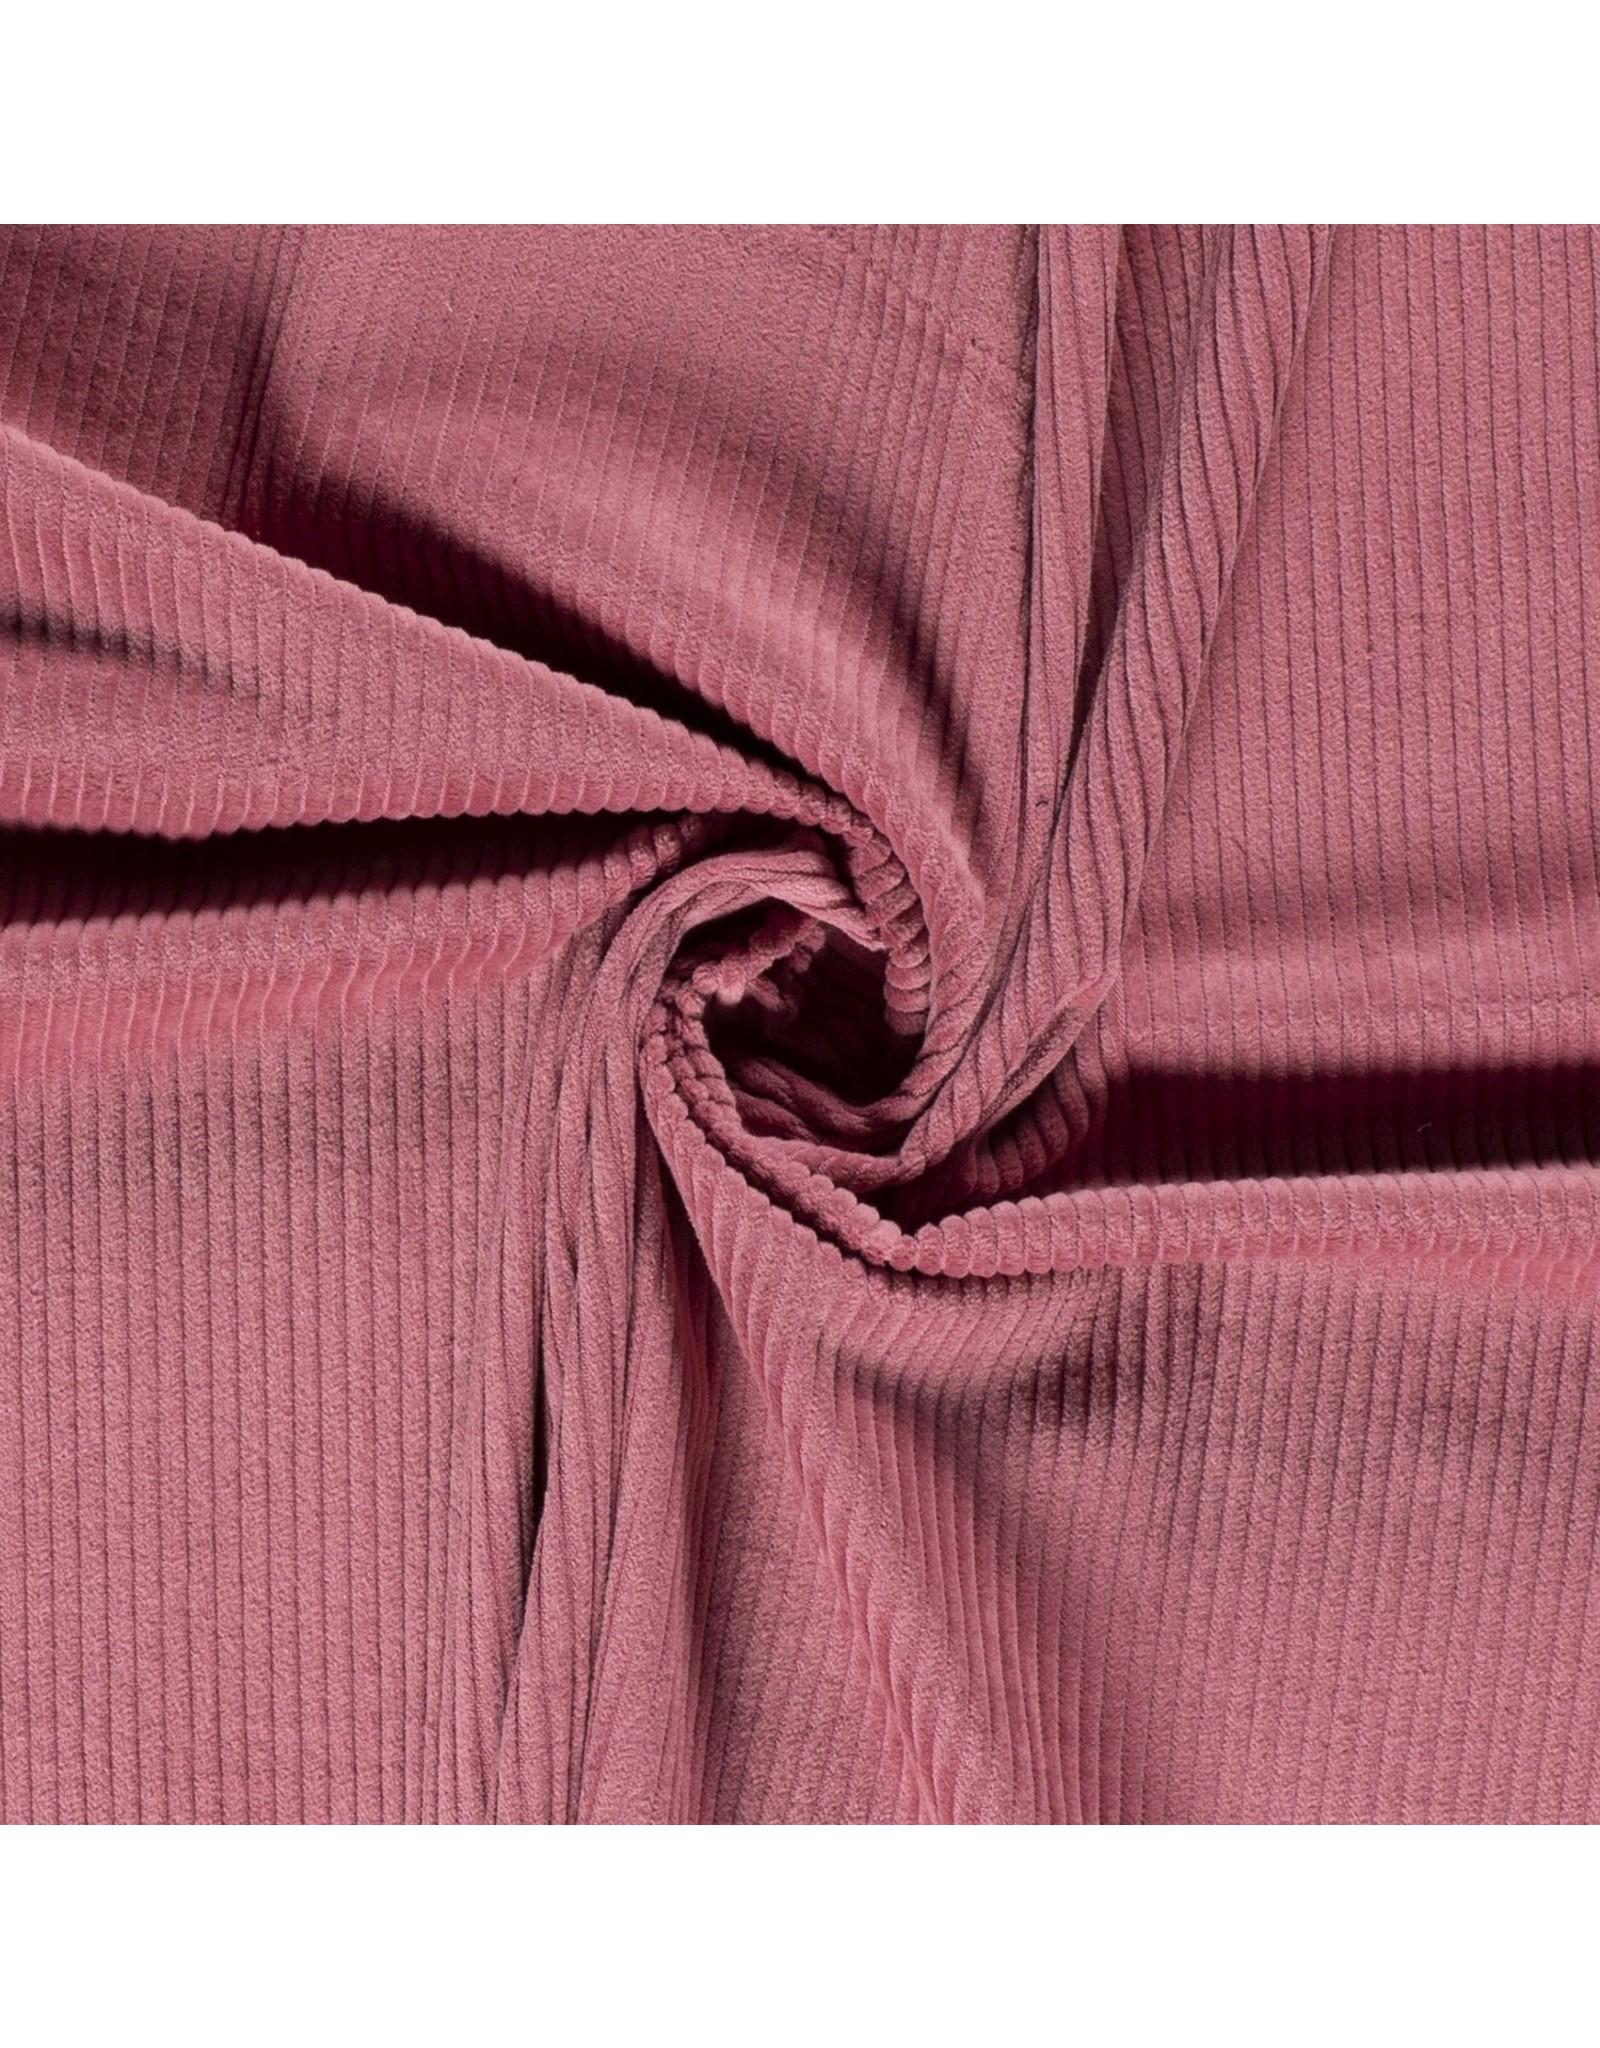 Katoen Corduroy - Oud roze